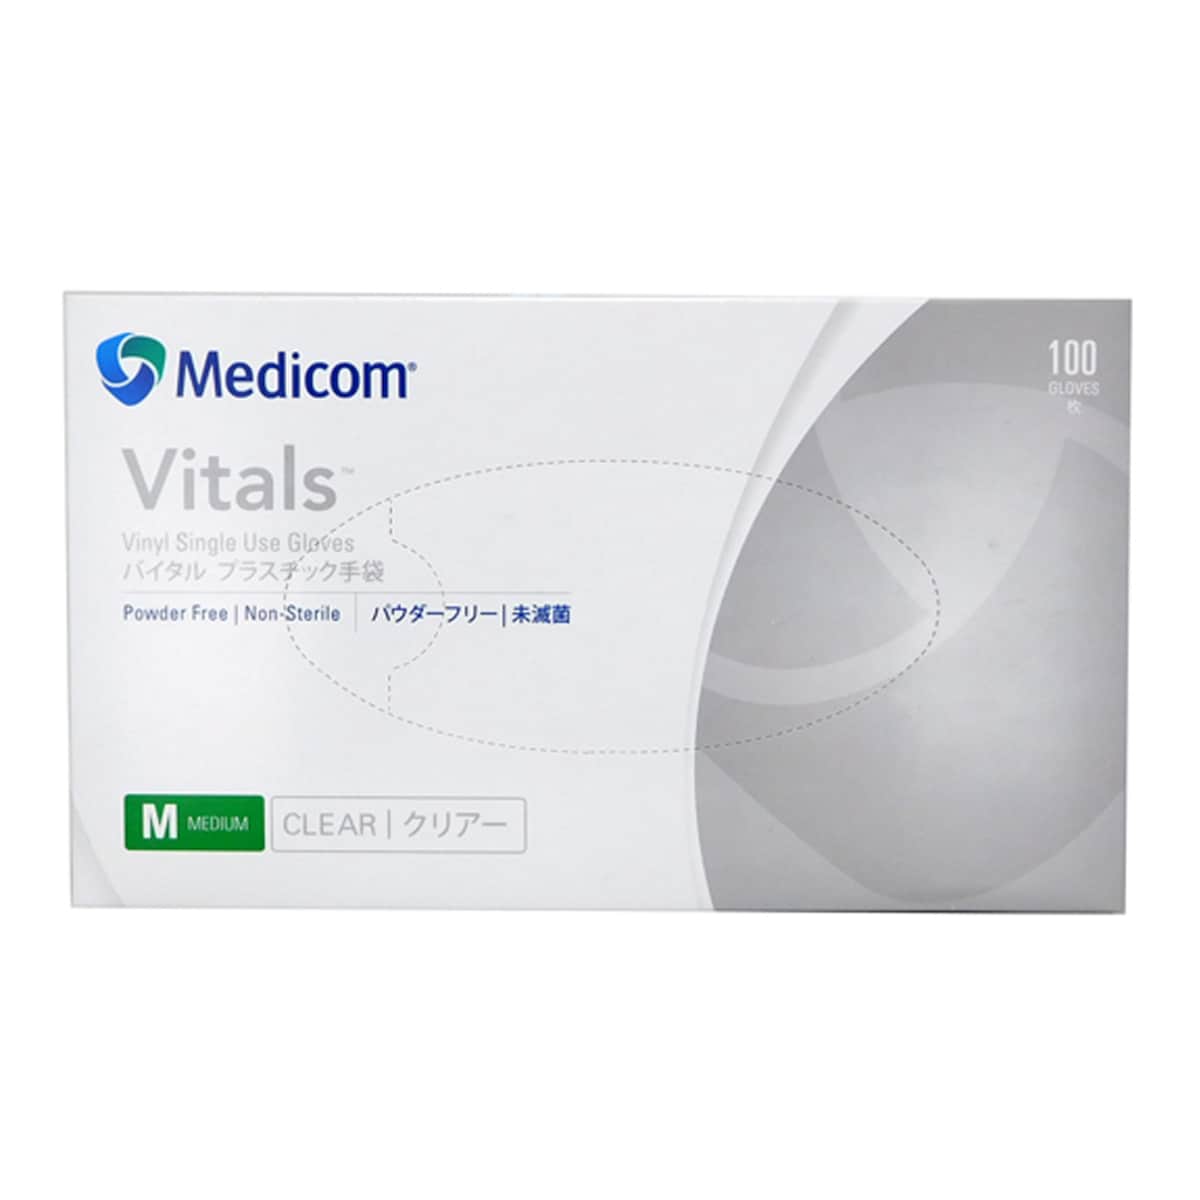 Medicom Vinyl Gloves Powder Free Medium 100 Pack (Branding may differ depending on availability)